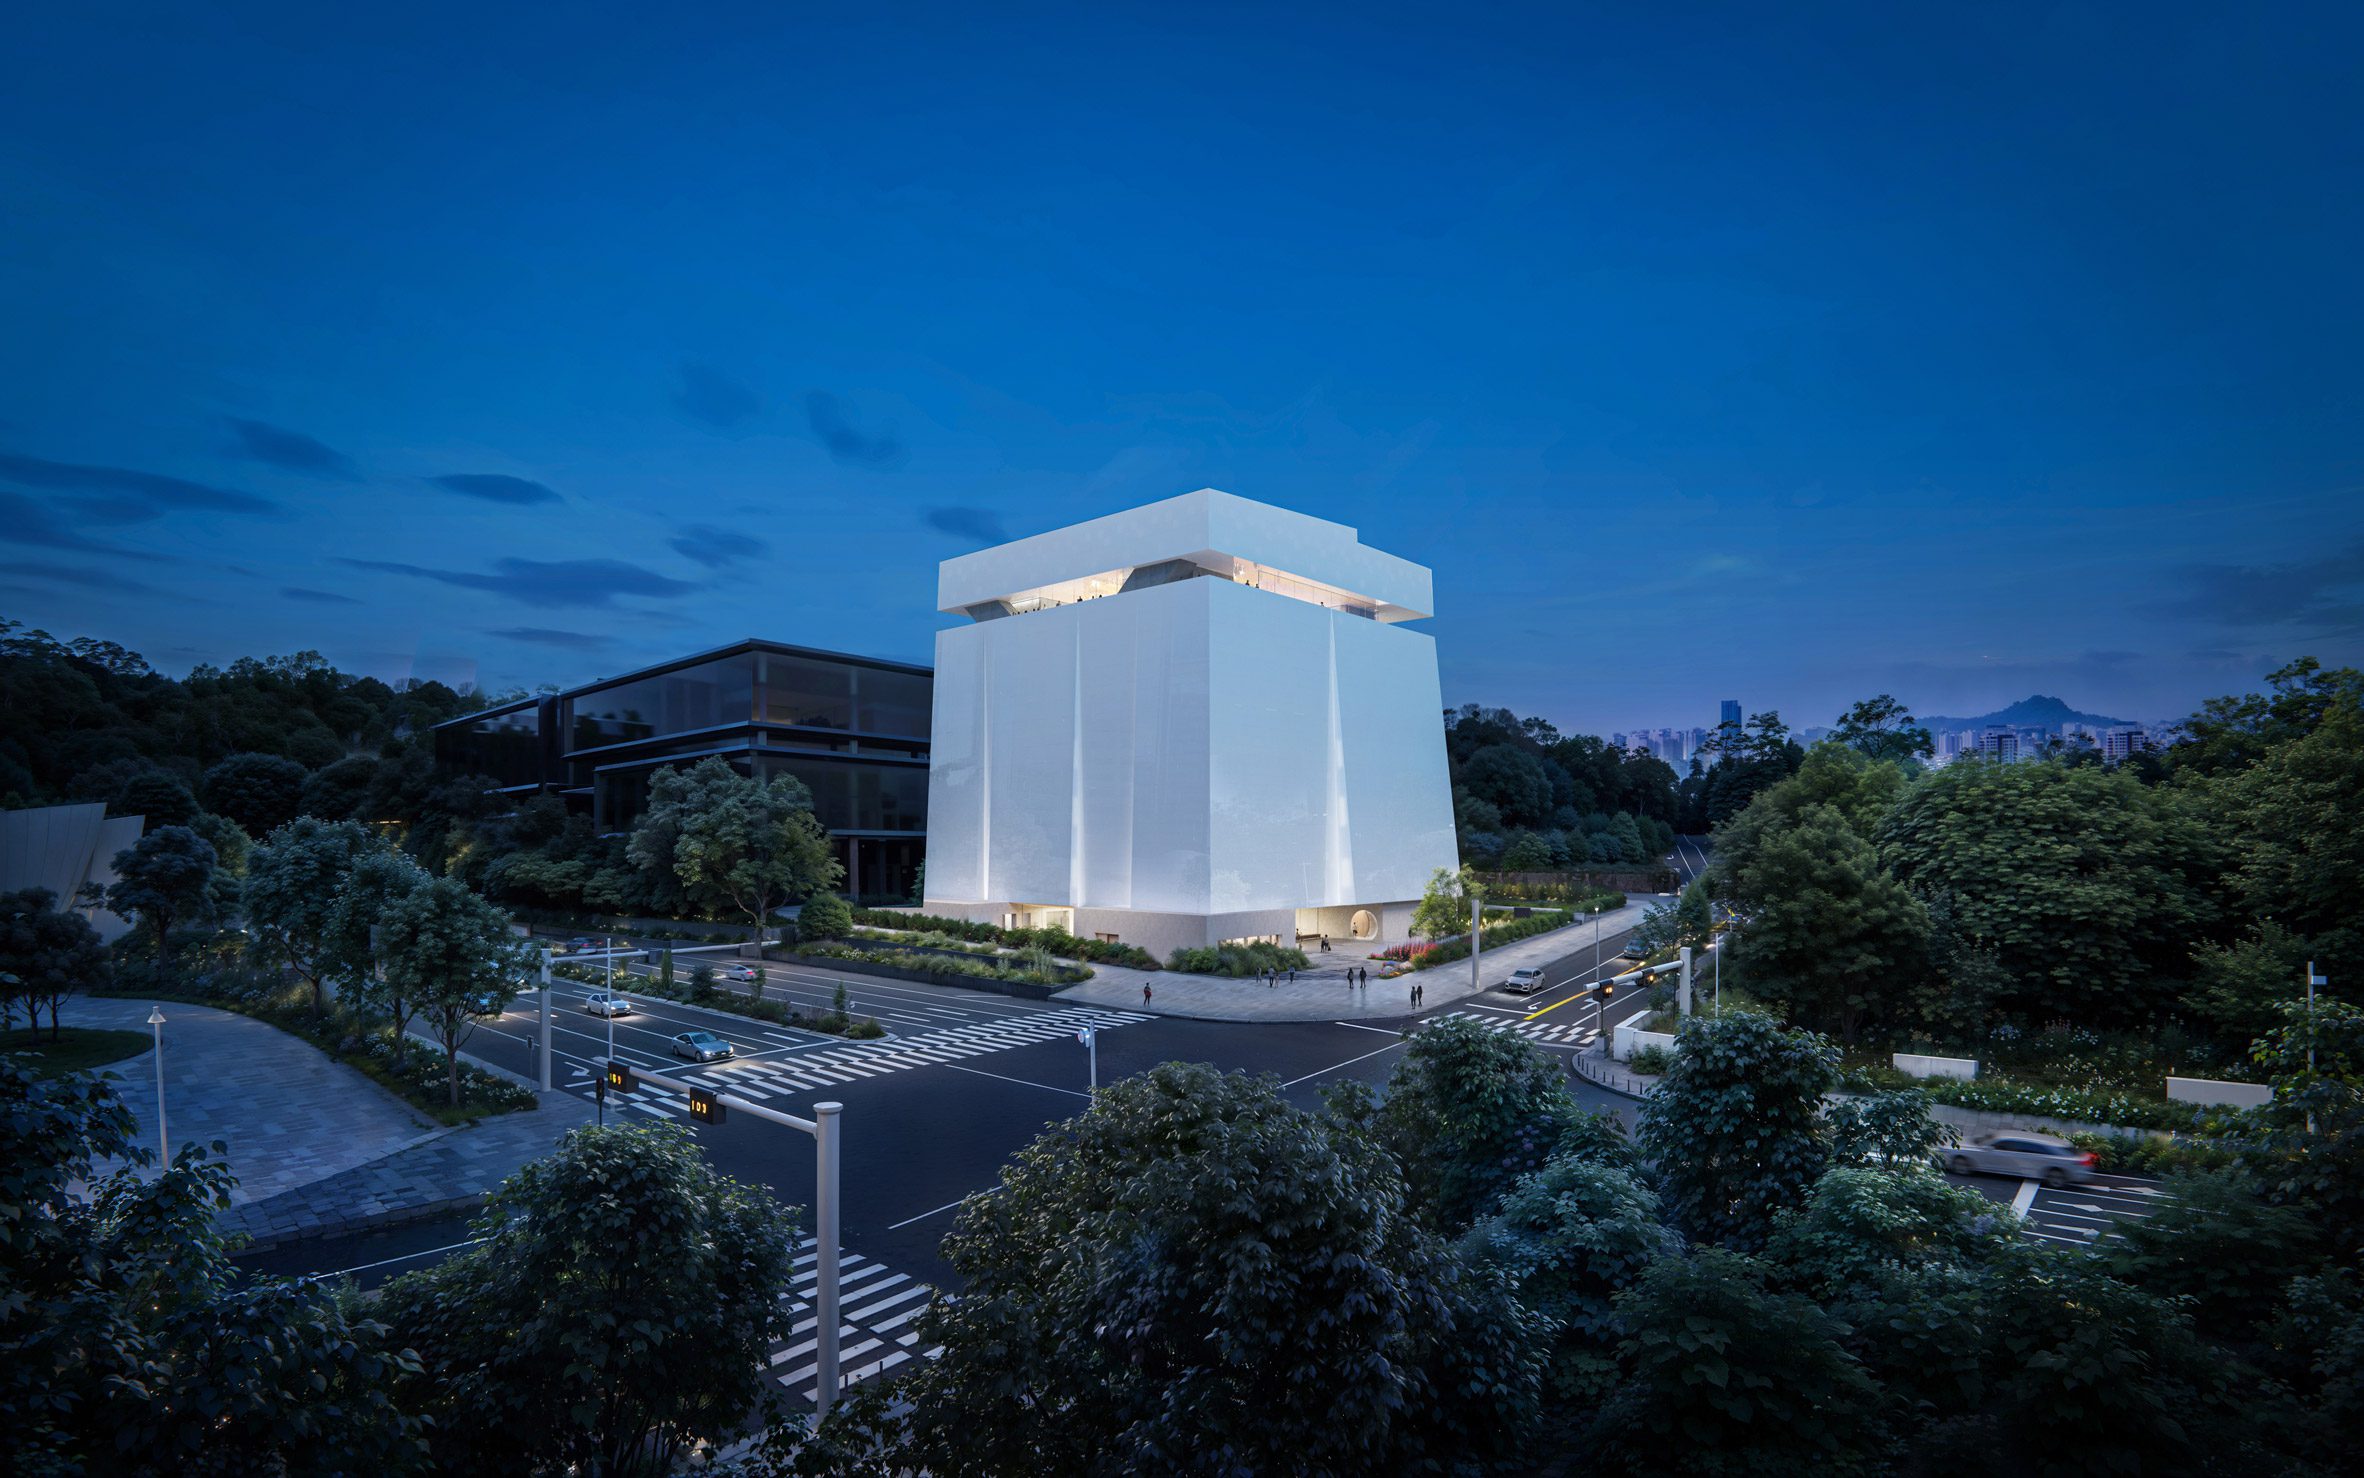 赫尔佐格&amp；德梅隆提议为首尔博物馆储藏巨型立方体|ART-Arrakis | 建筑室内设计的创新与灵感